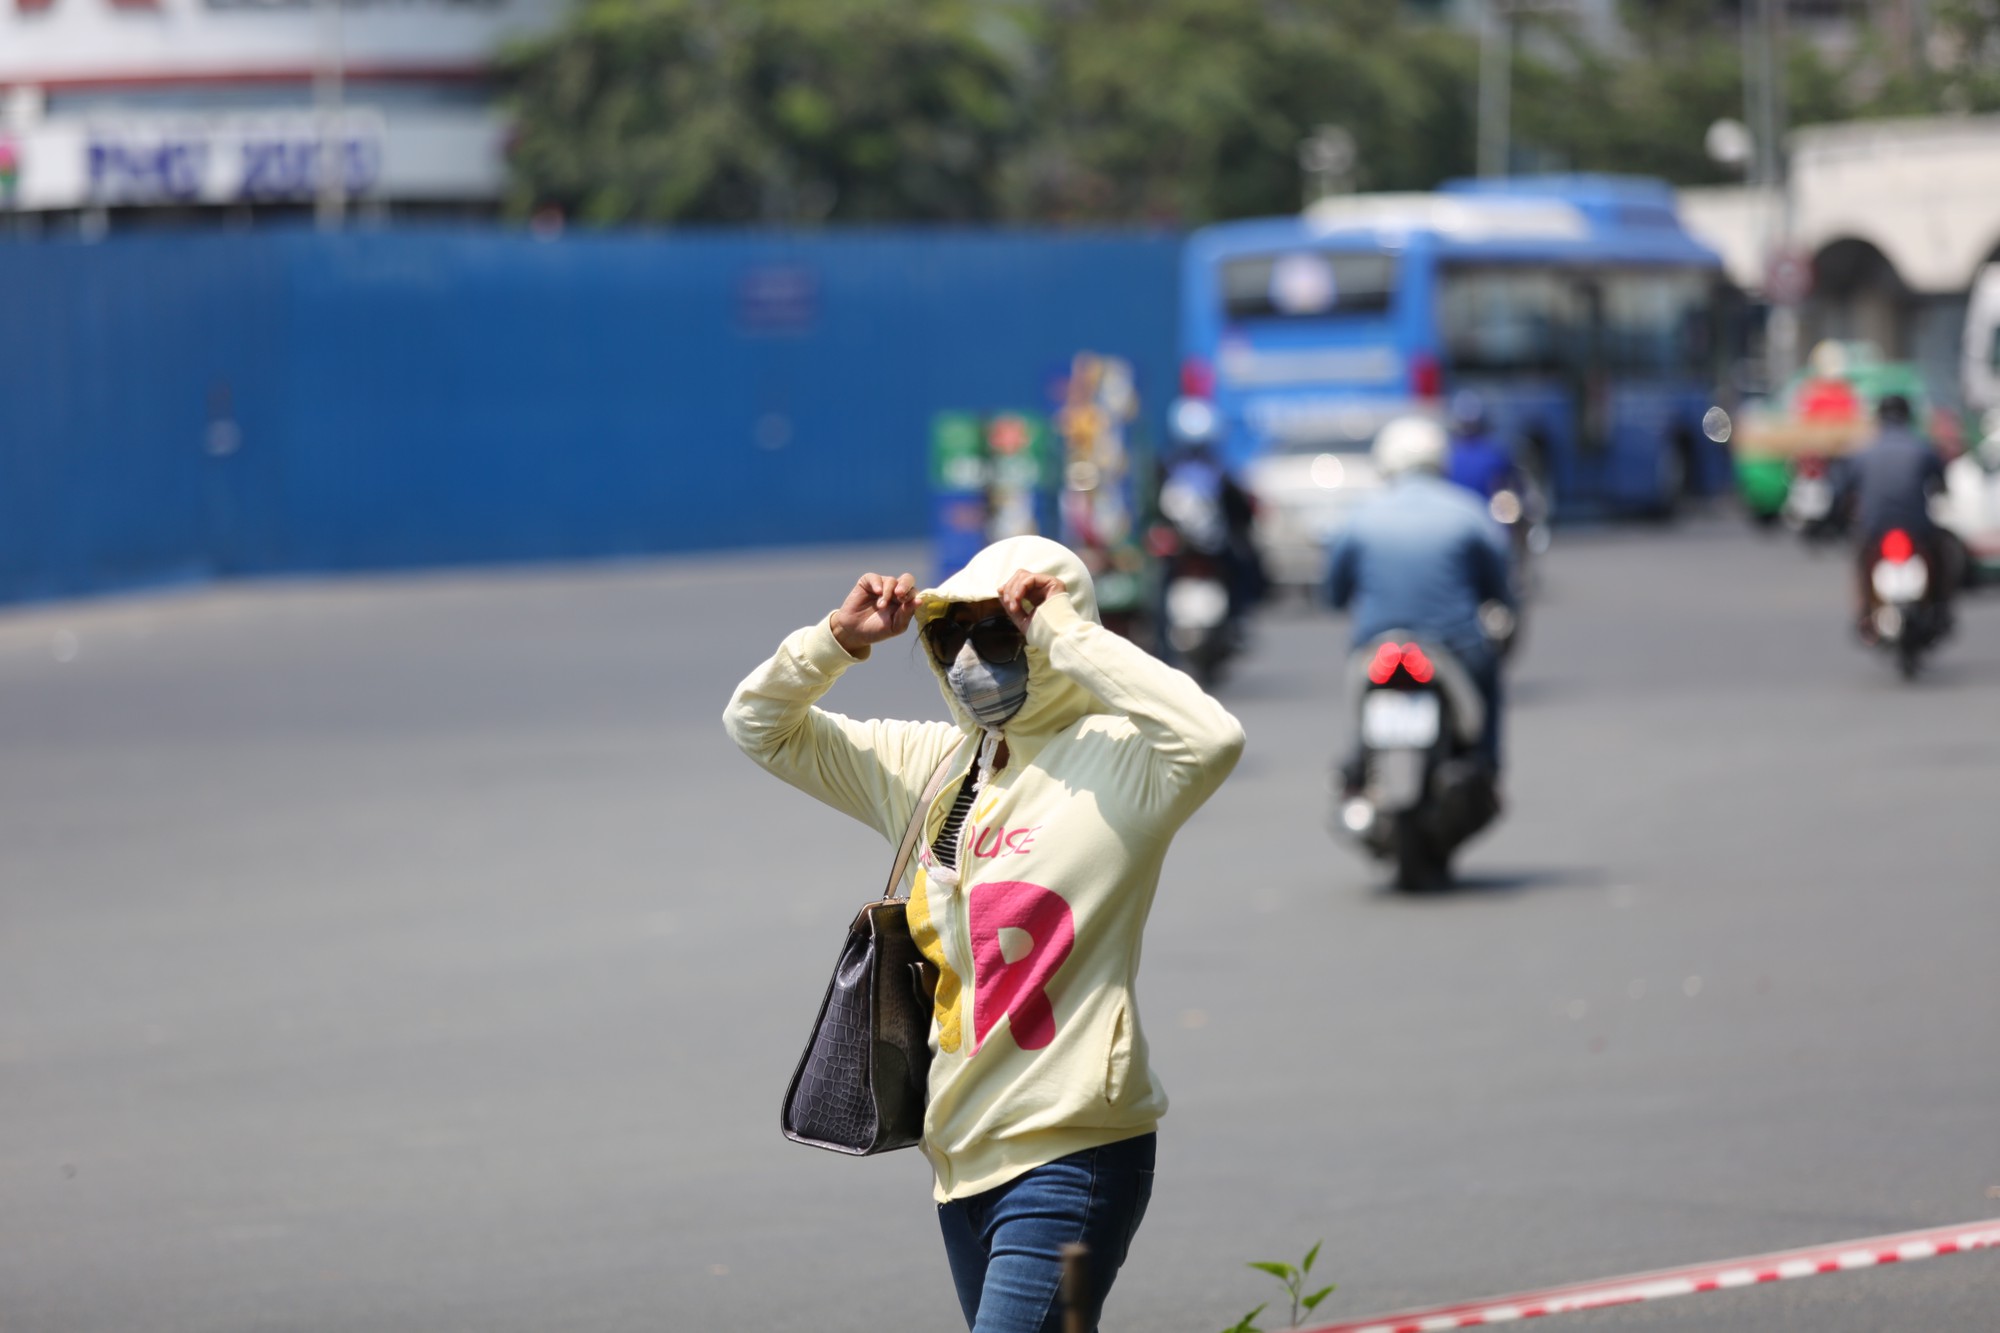 Nhiệt độ ở Sài Gòn lên đến 39 độ C, kéo dài đến tháng 5 - Ảnh 2.